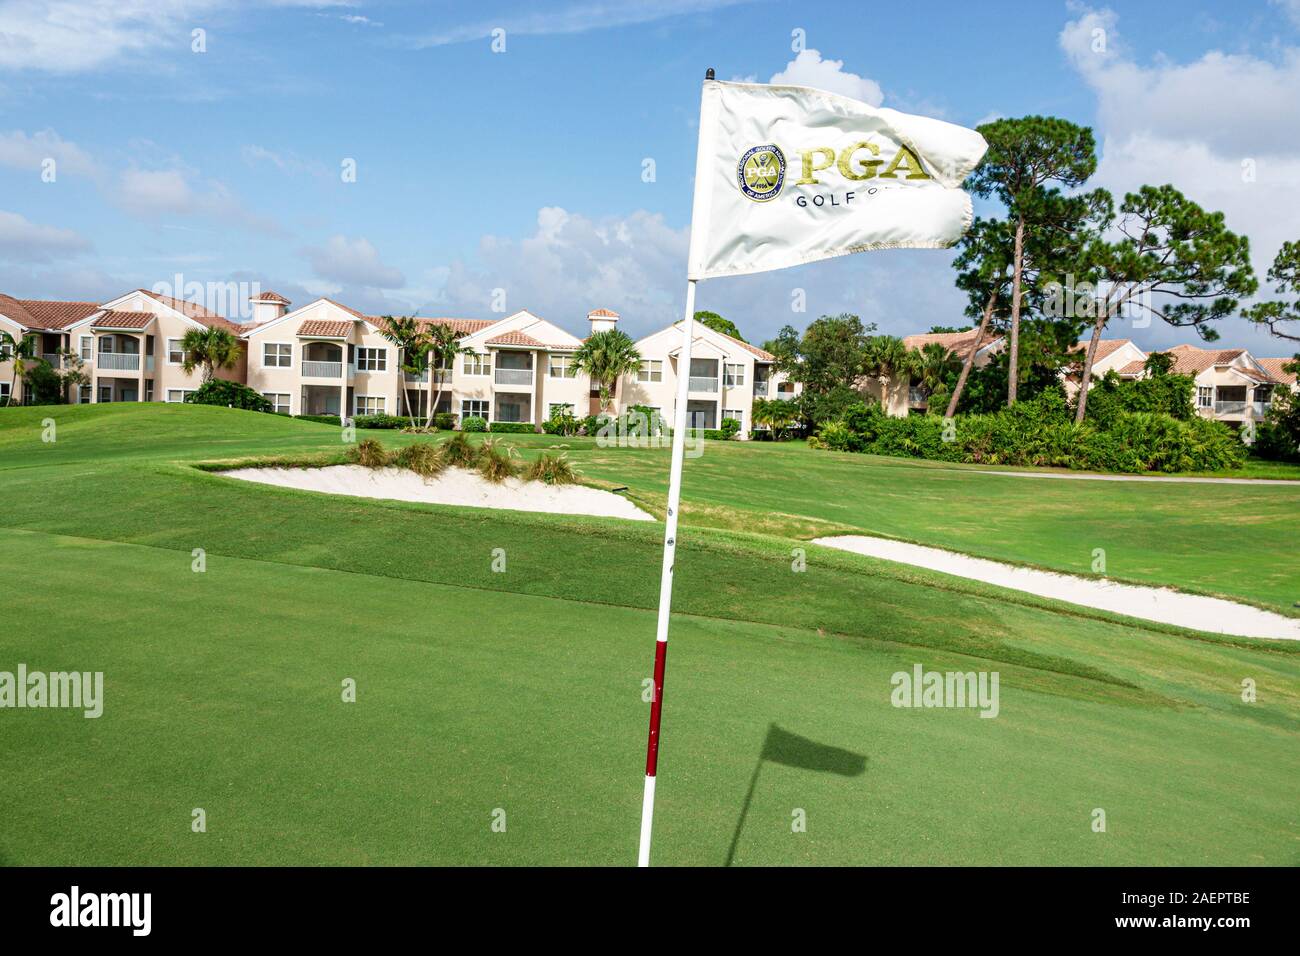 Port St Saint Lucie Florida, PGA Golf Club en PGA Village, campo verde, trampa de arena, búnker, bandera de hoyo, campo de golf, casas adosadas, comunidad planificada, FL1909 Foto de stock